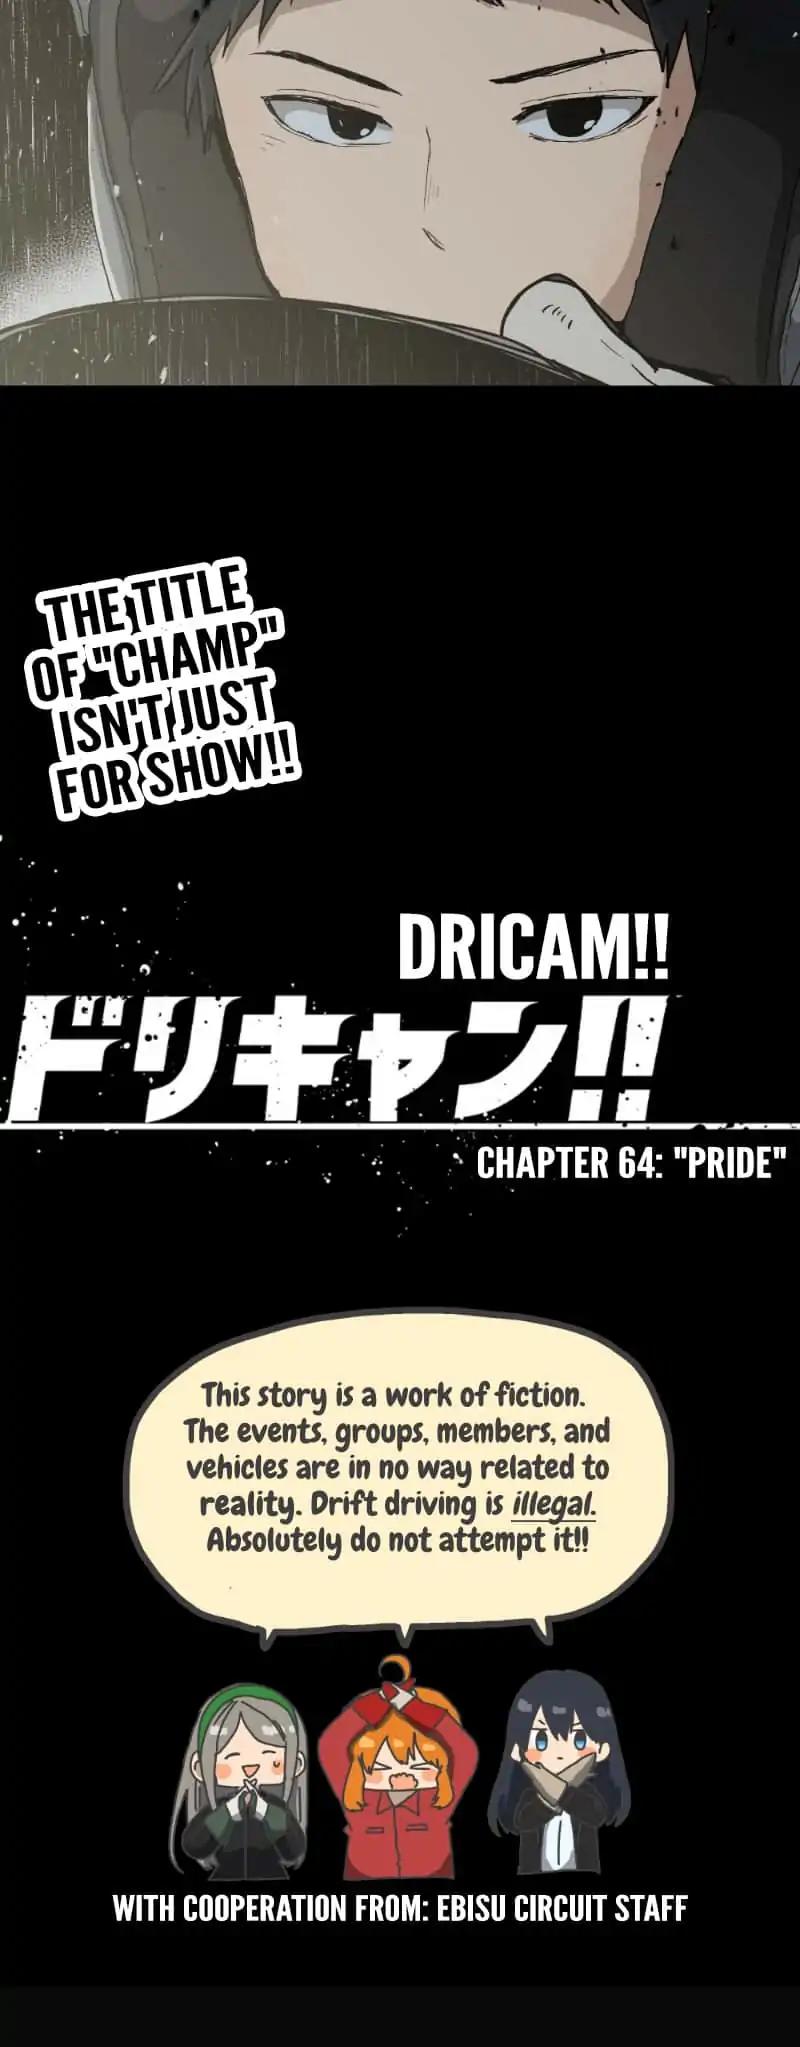 Dricam!! Chapter 64: